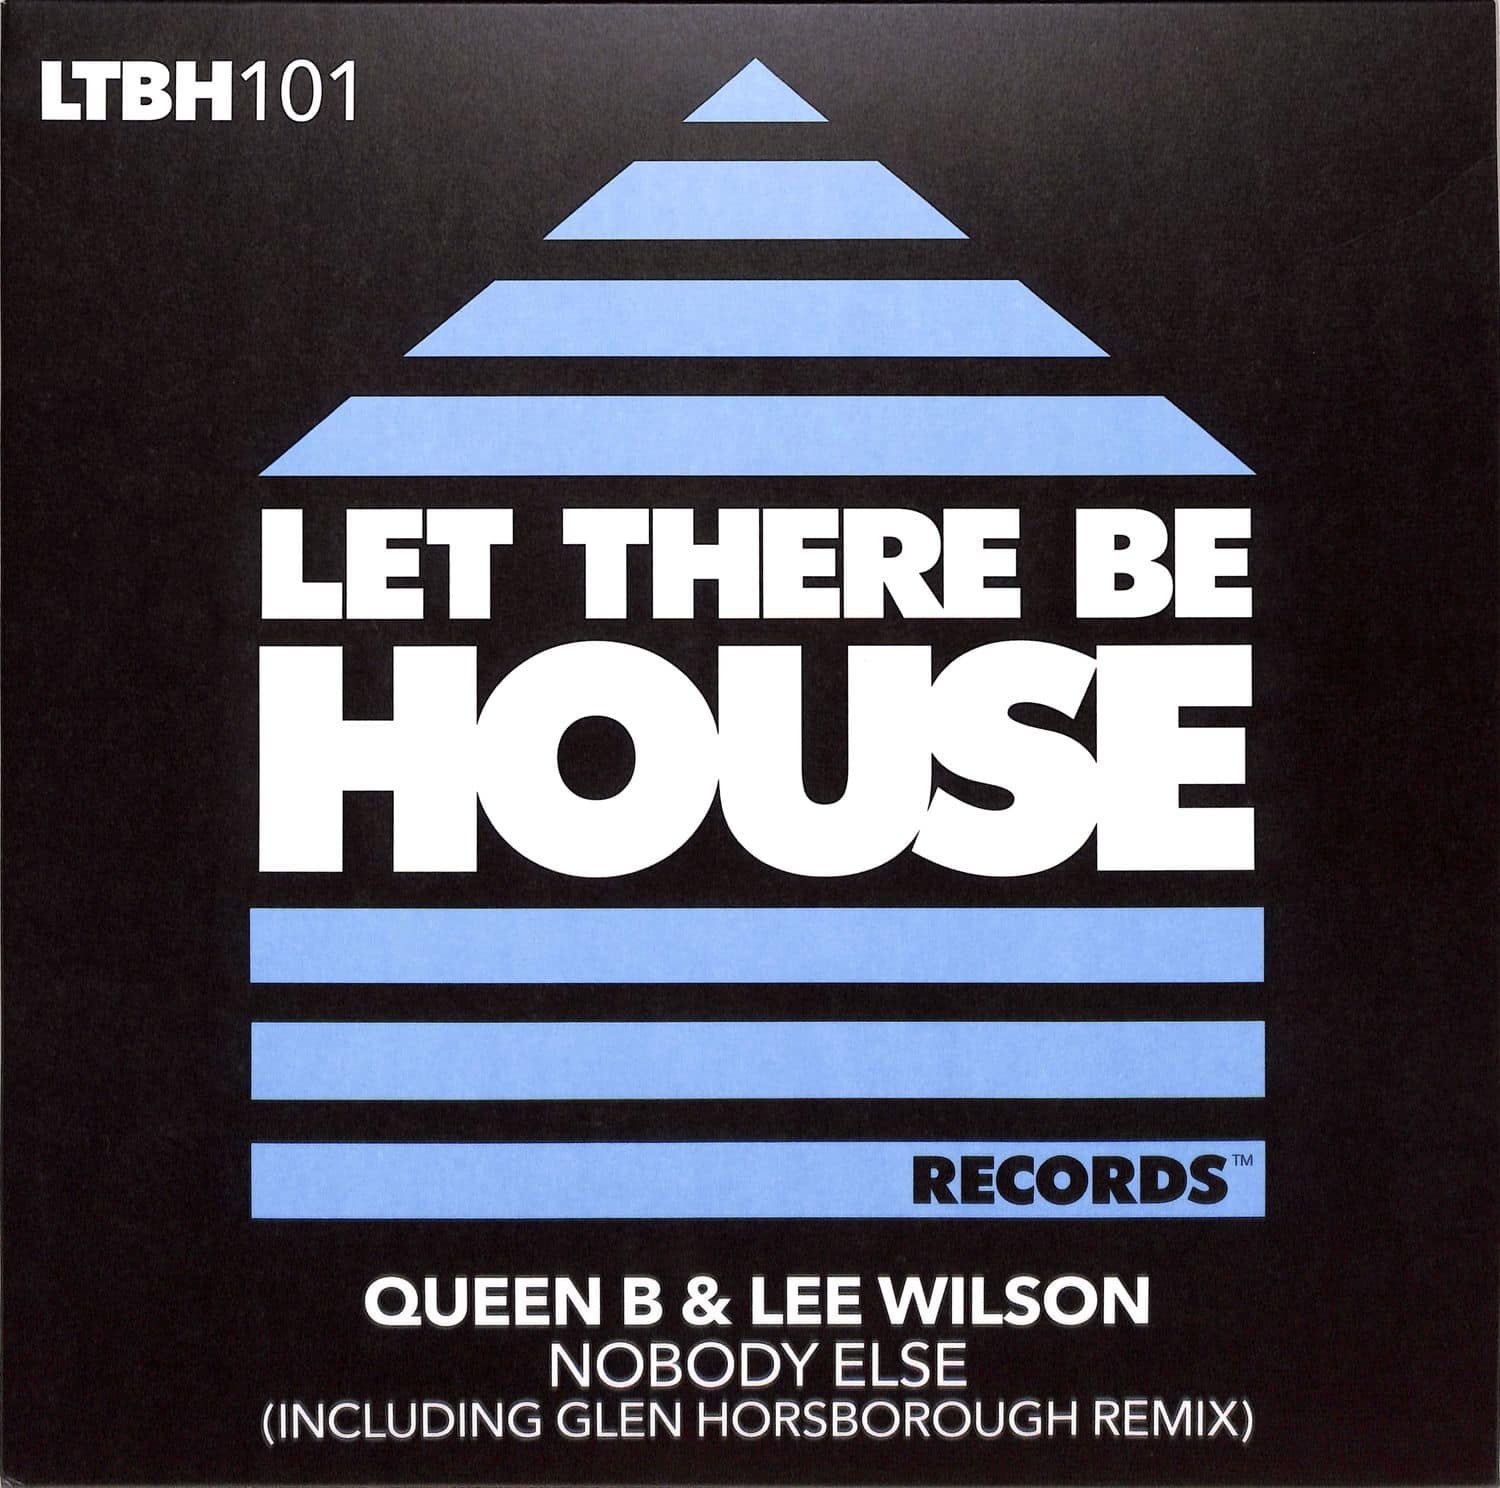 Queen B & Lee Wilson - NOBODY ELSE